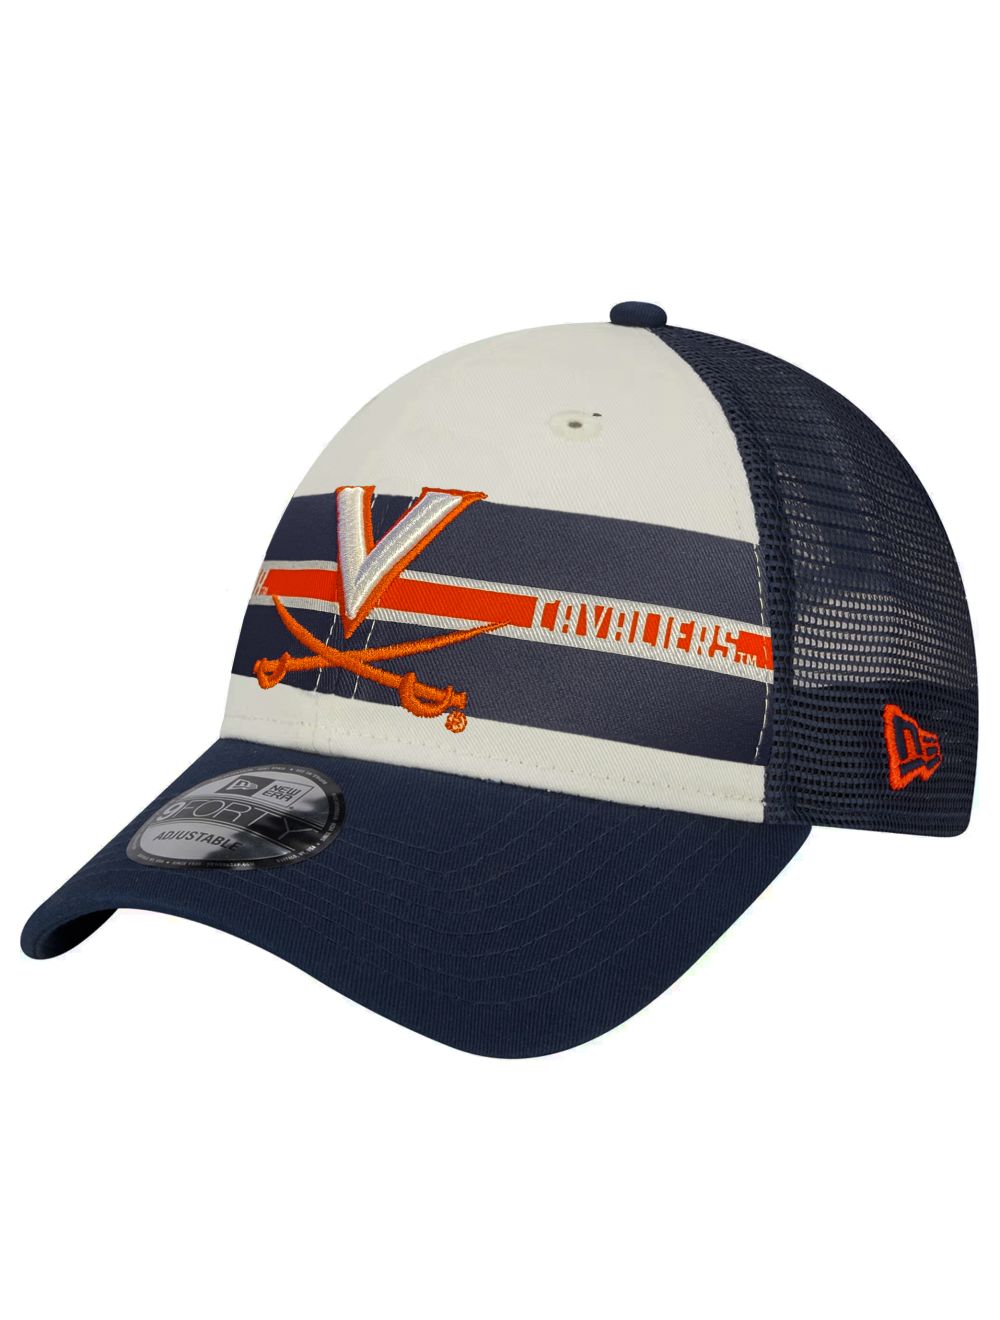 New Era 9FORTY Team Stripes Adjustable Mesh Back Hat - Mincer's of